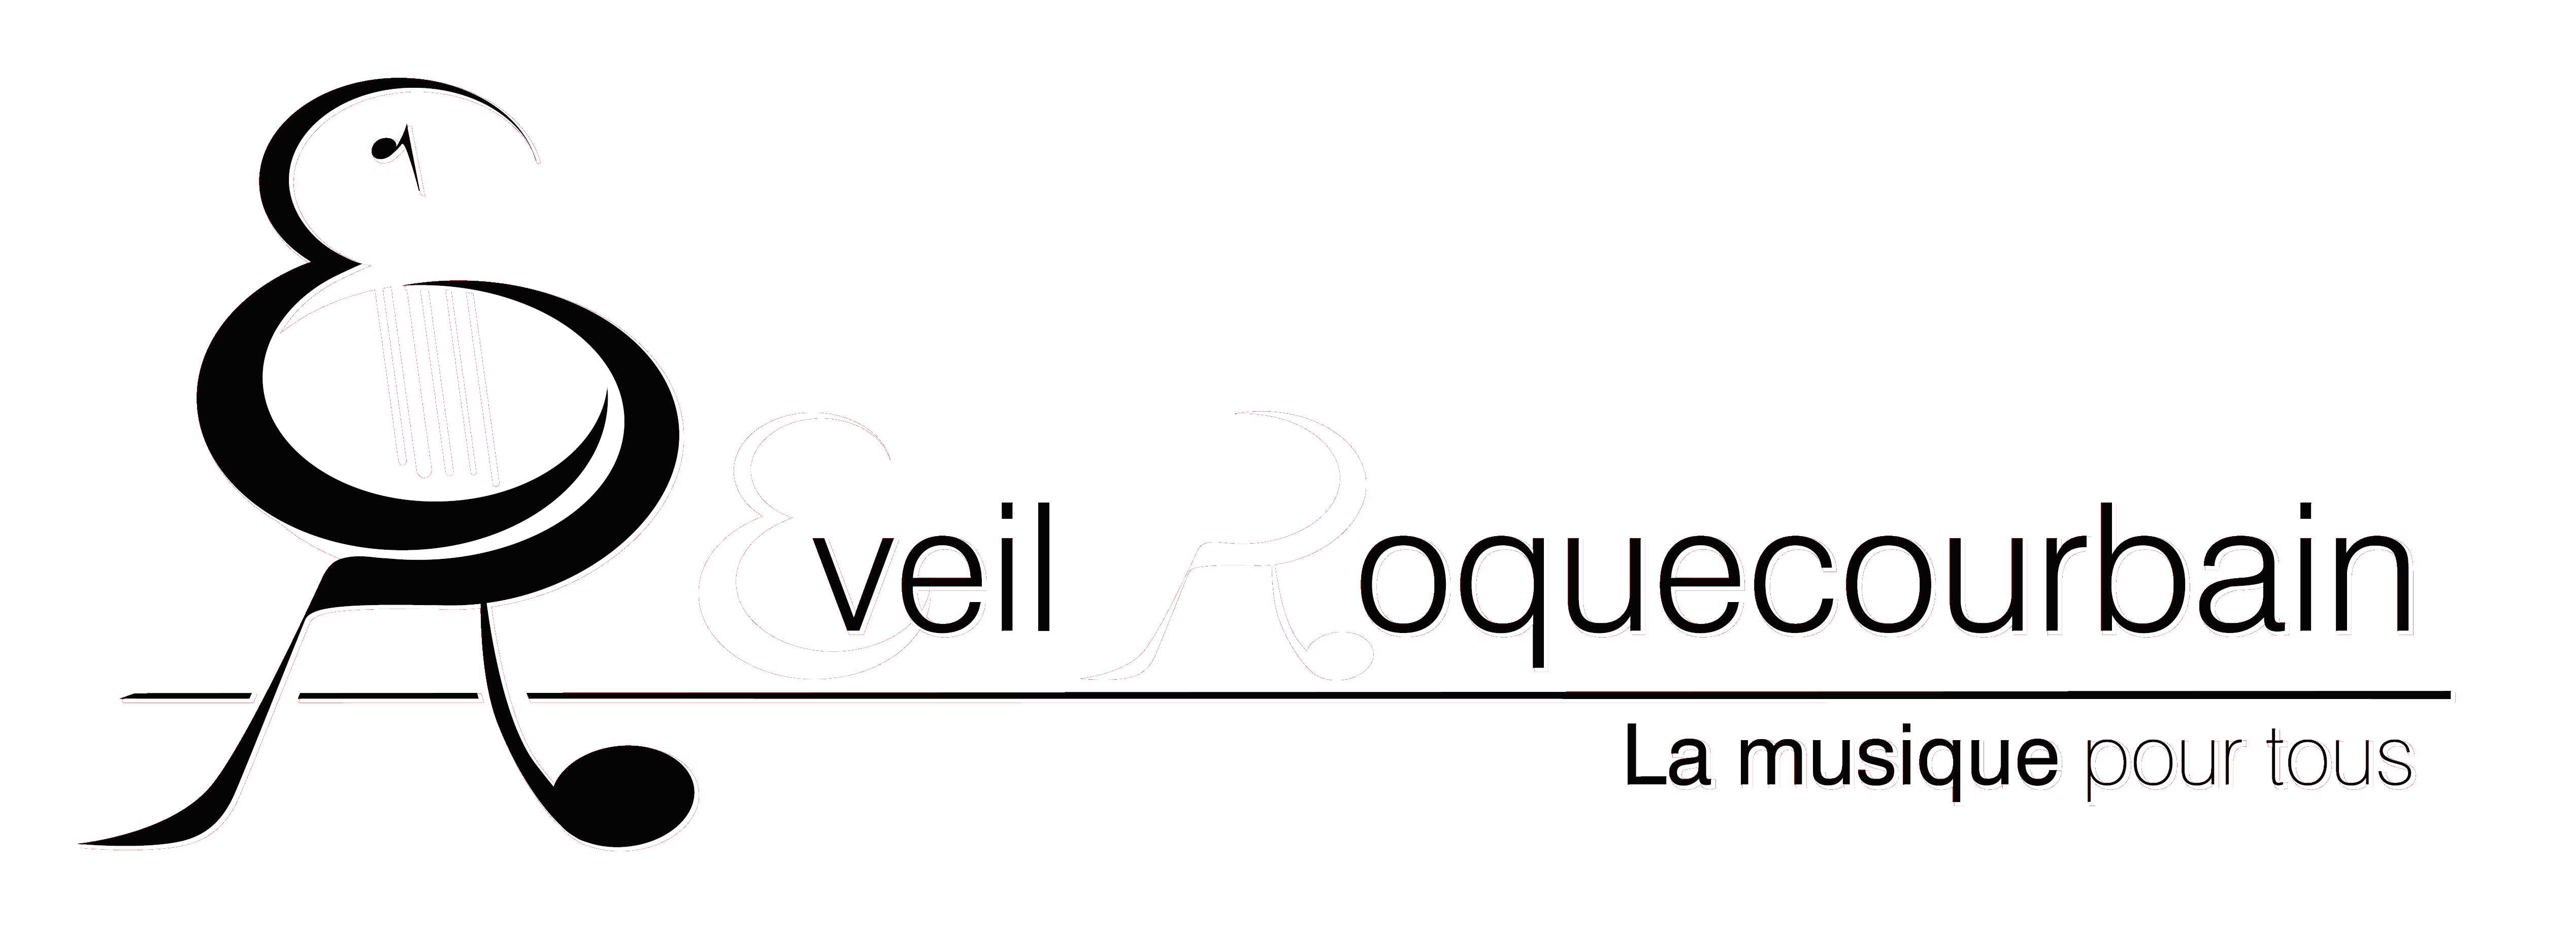 Logo Eveil Roquecourbain